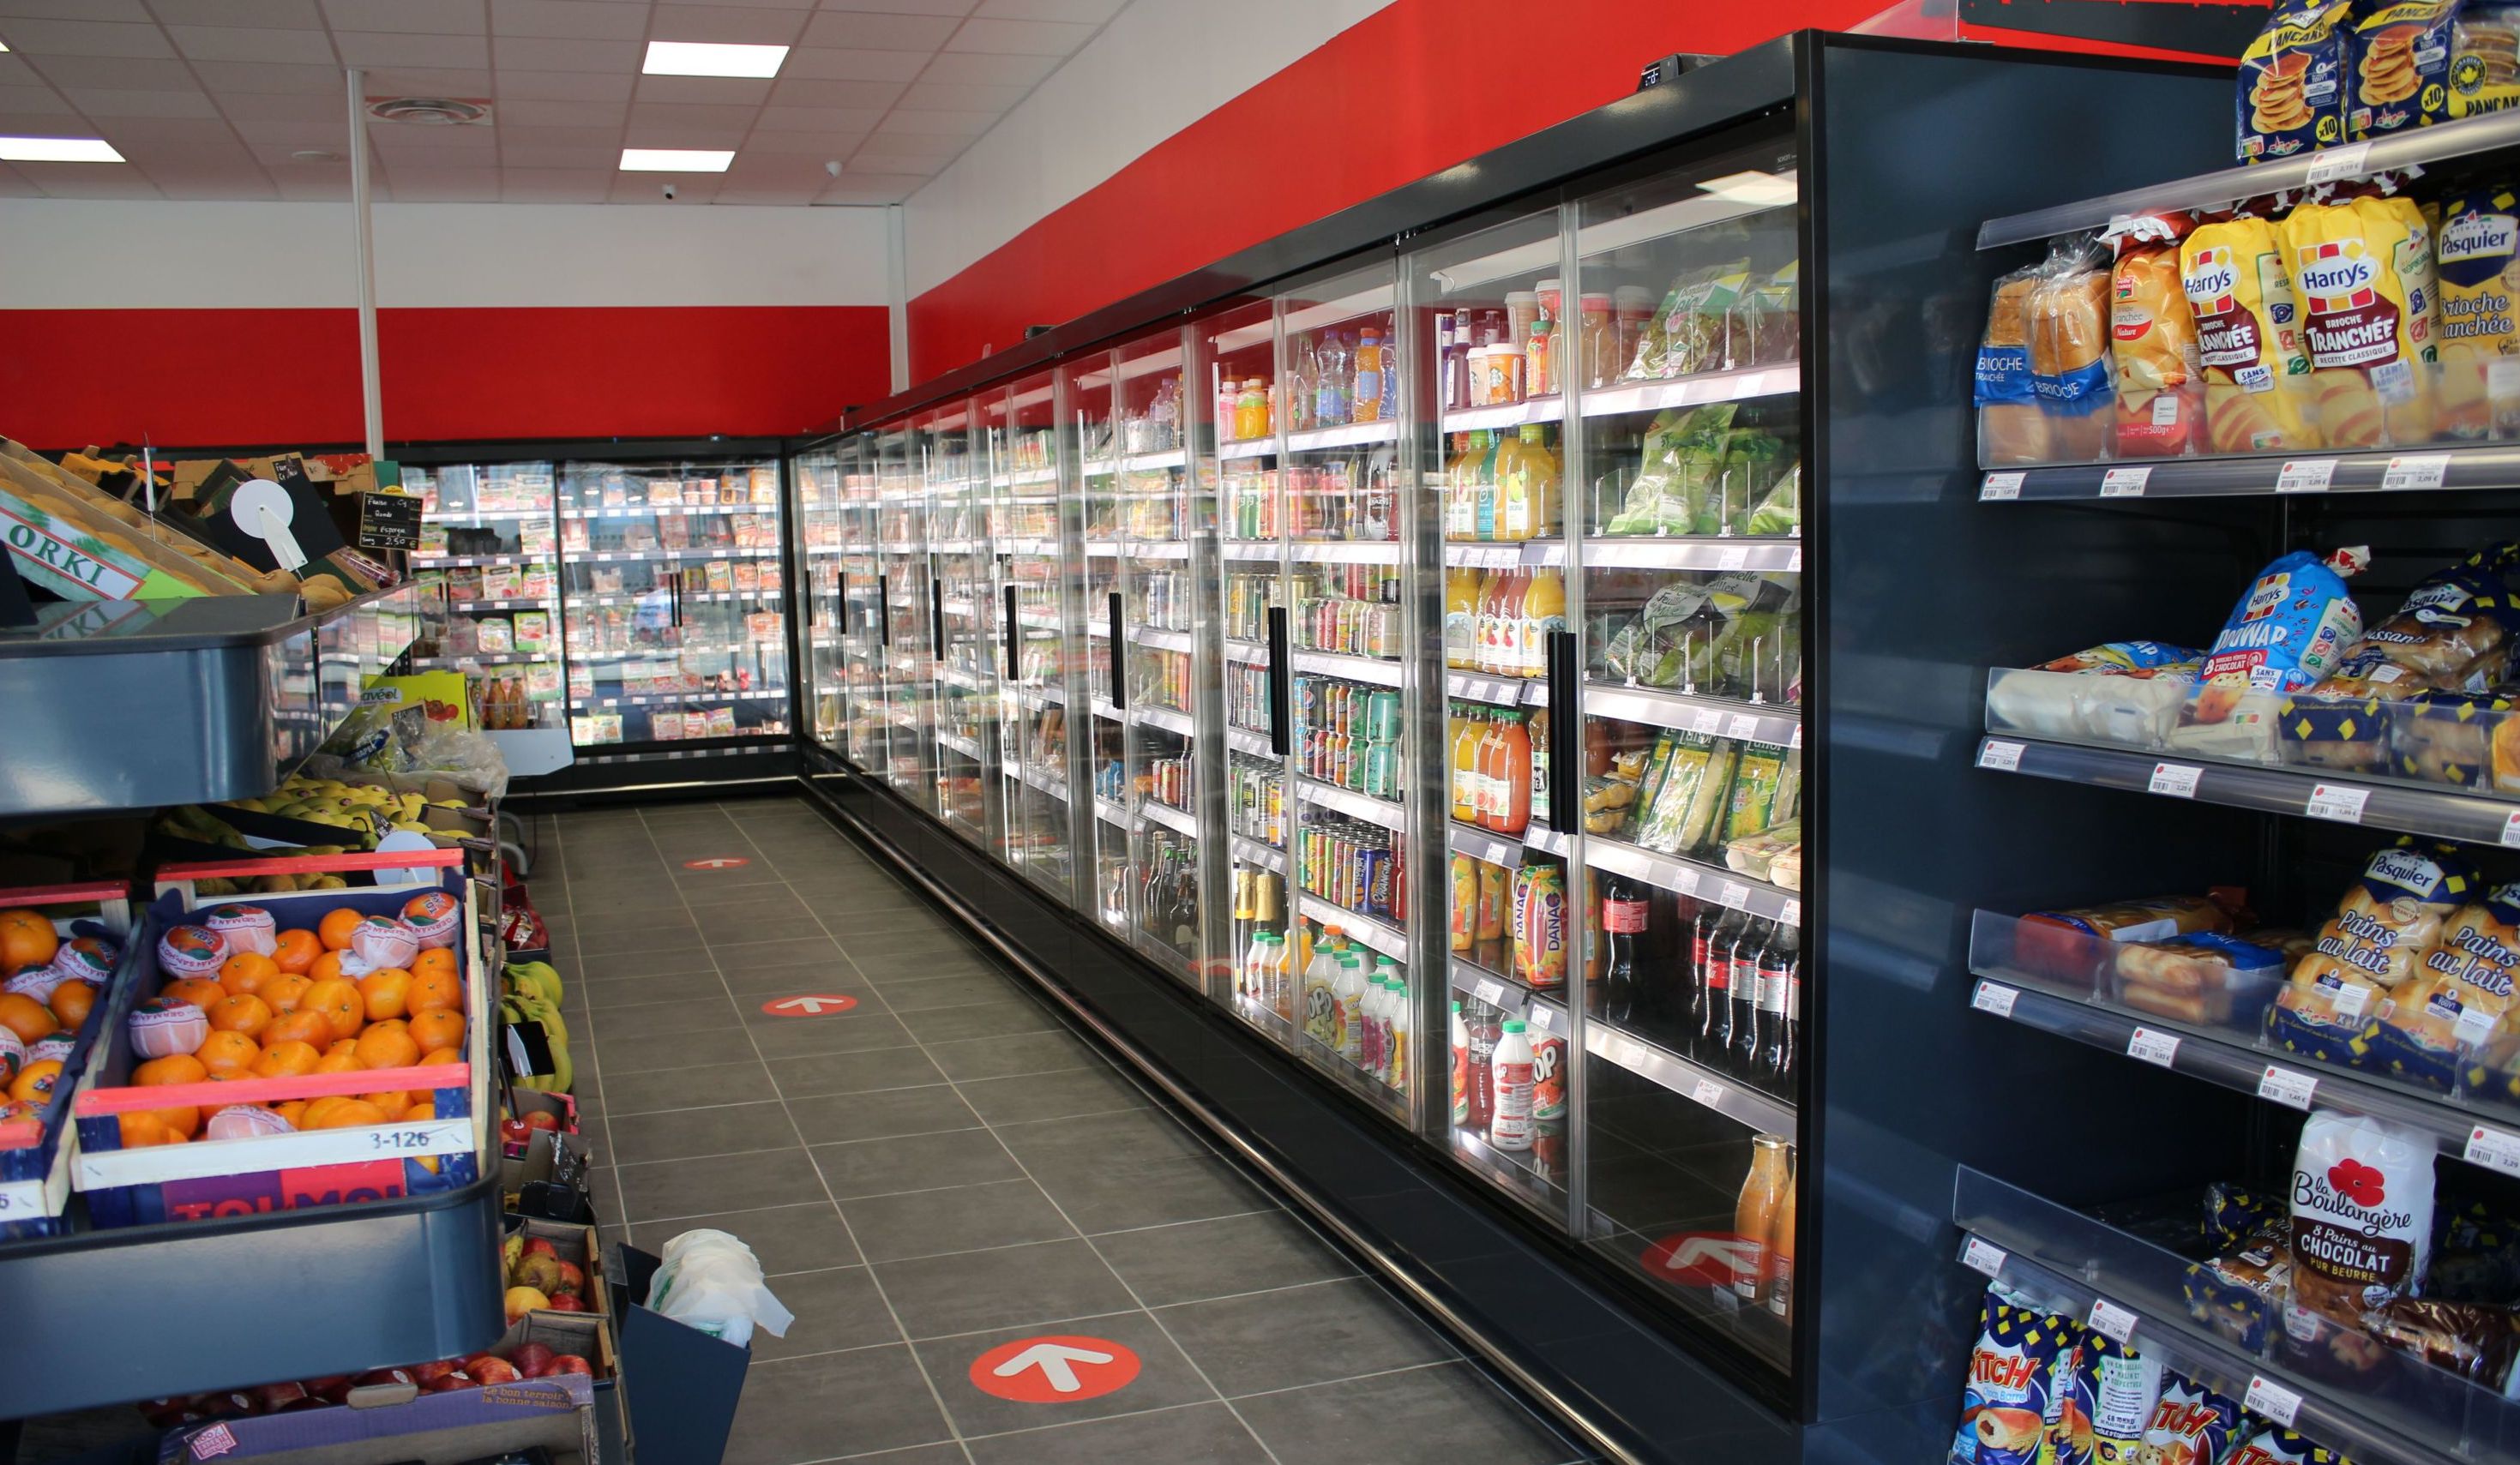 Le nouveau supermarché Coccinelle Express de Vernon possède une surface exploitable de 480 m2. 